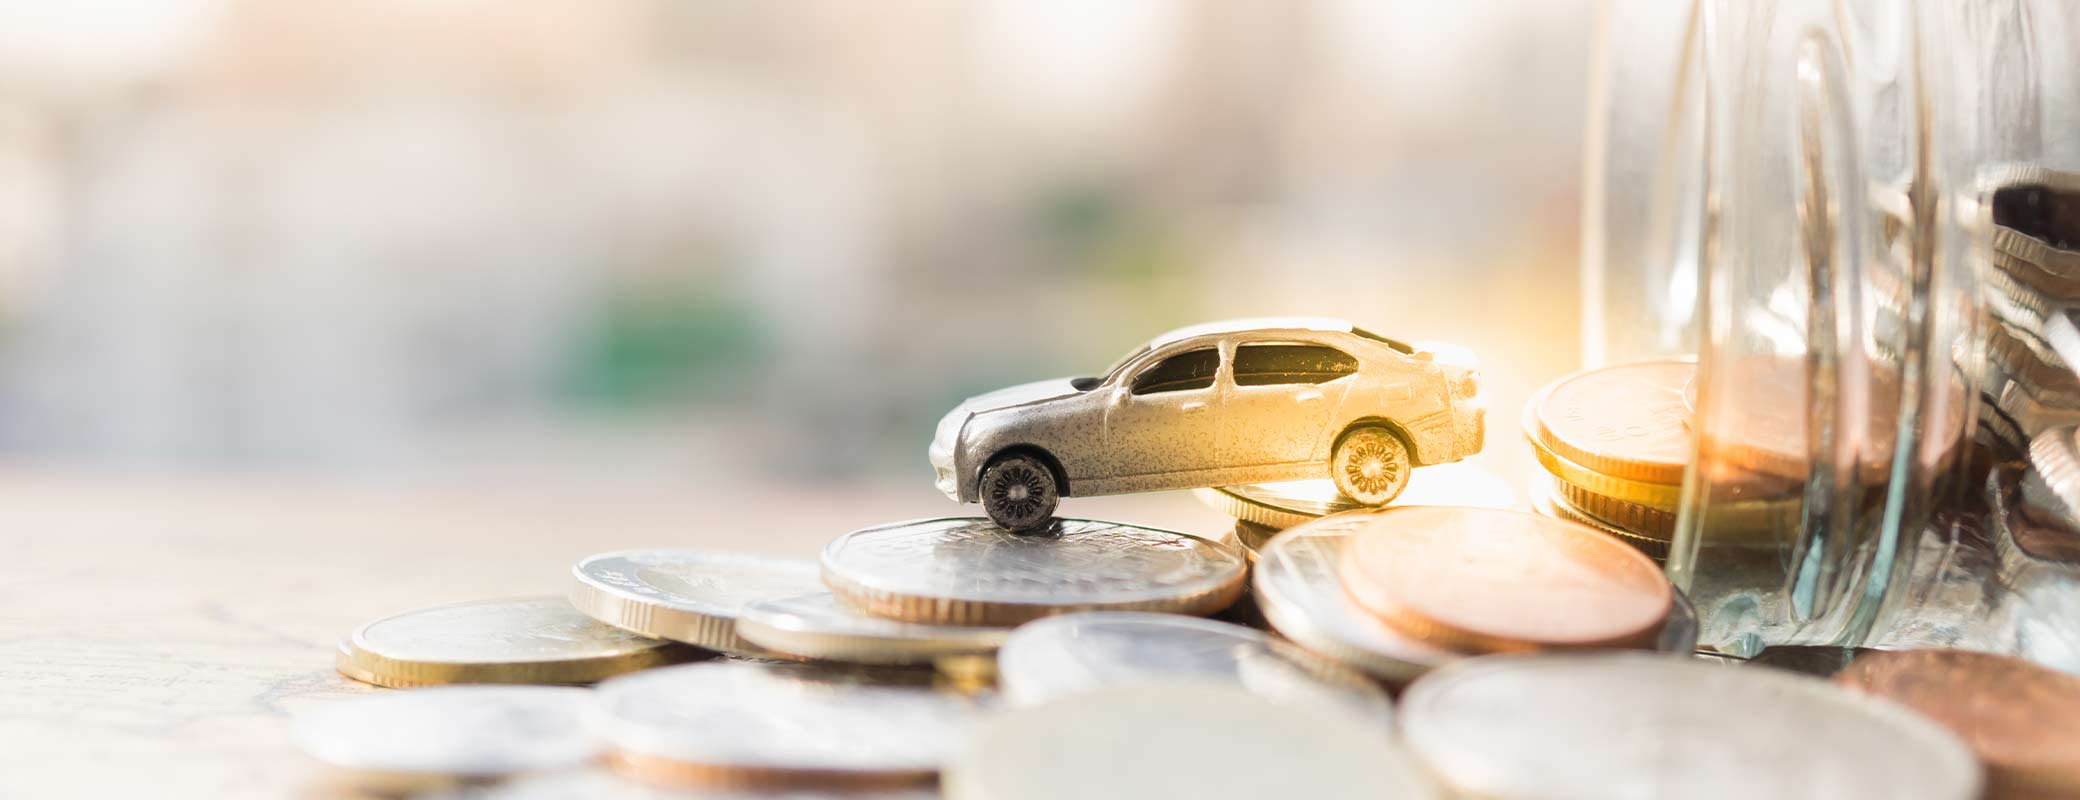 Autofinanzierung: Kreditwiderruf als Chance zur Rückabwicklung?